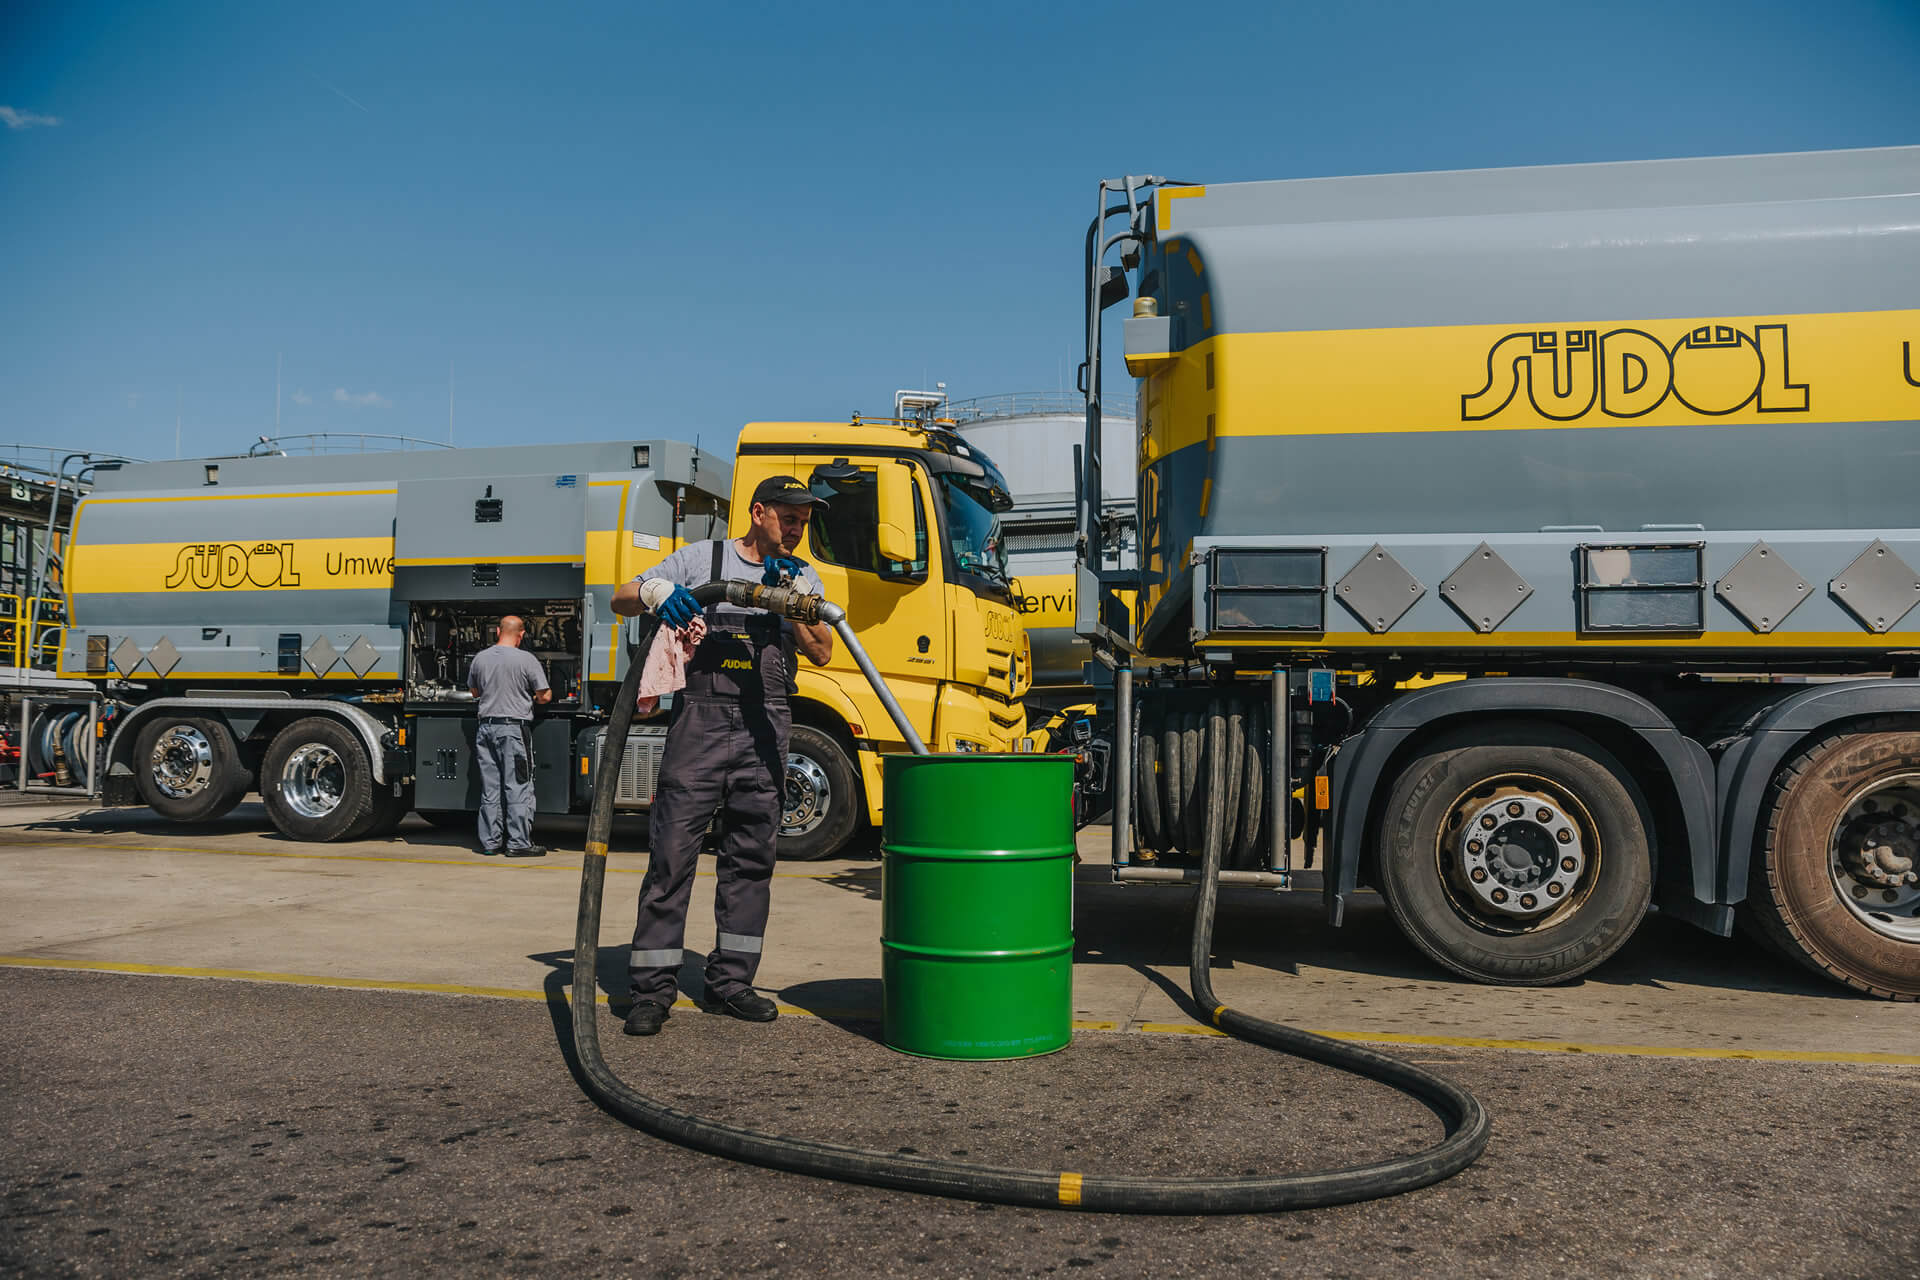 Südöl Umwelt Service-Recycling - Wiederverwertung von Altölen